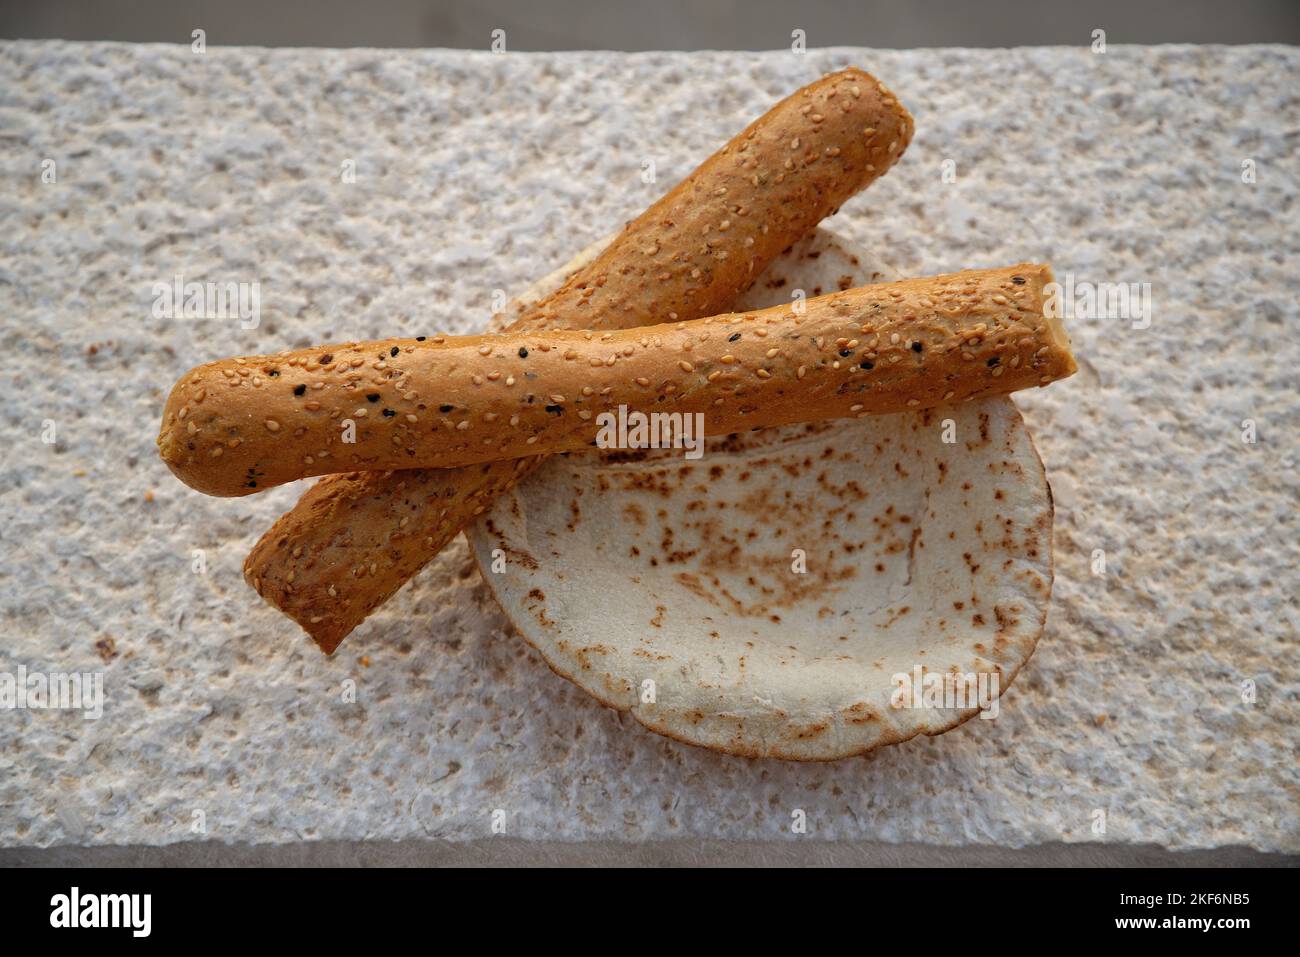 Jordanisches Fladenbrot und gesäte Brotstäbchen. Naher Osten Grundnahrungsmittel Ernährung auf Weizenbasis. Stockfoto